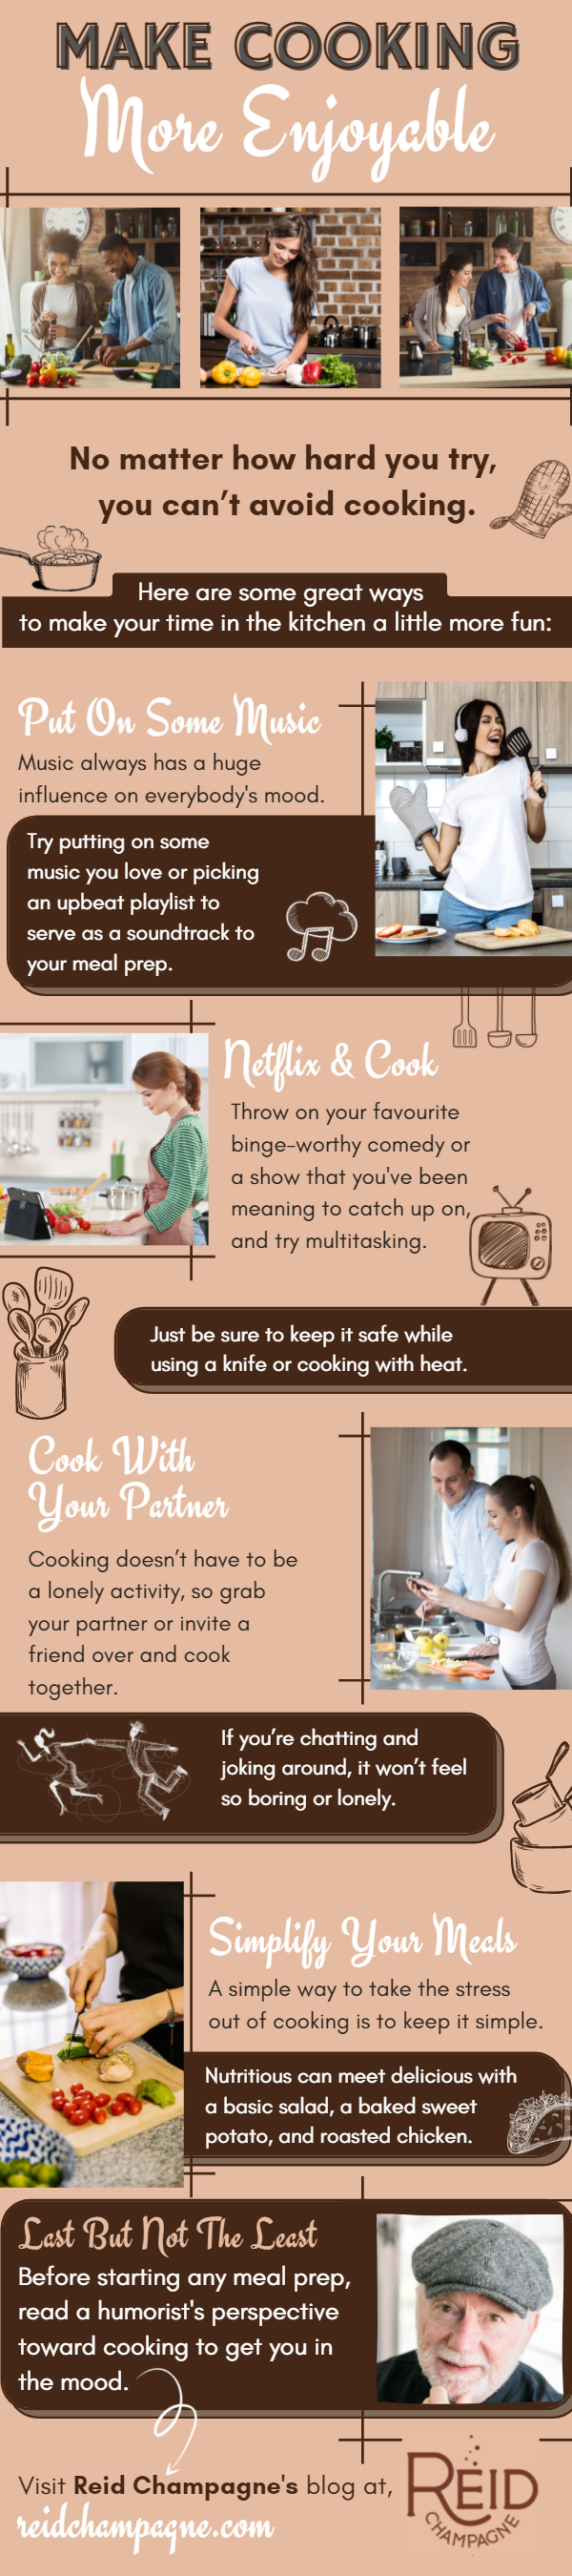 make cooking more enjoyable